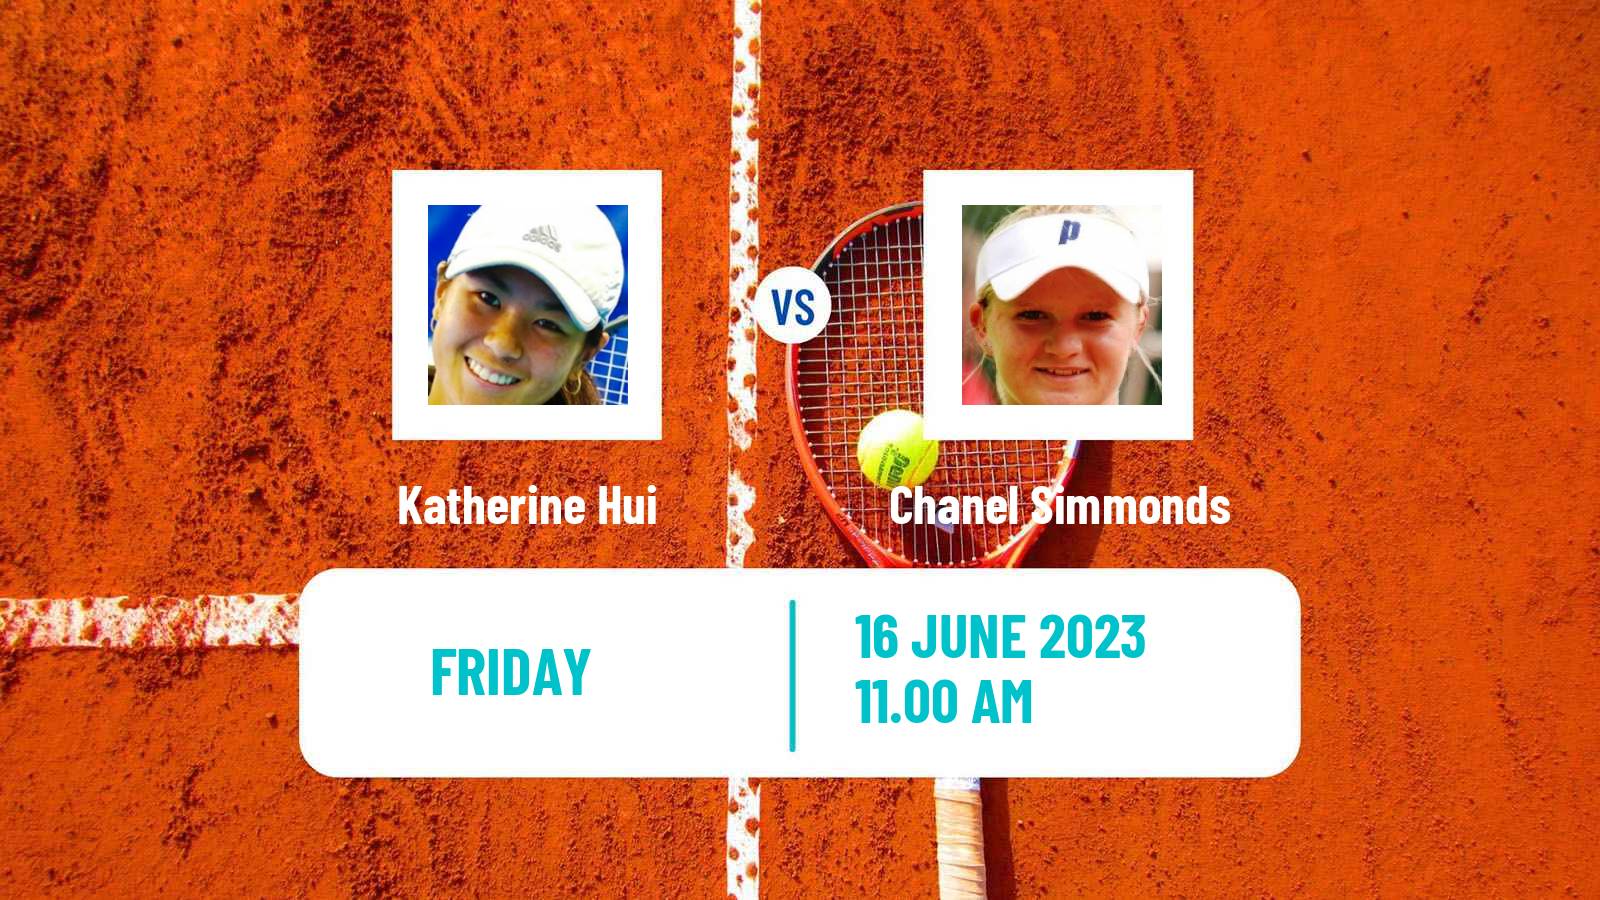 Tennis ITF W15 San Diego Ca 2 Women Katherine Hui - Chanel Simmonds